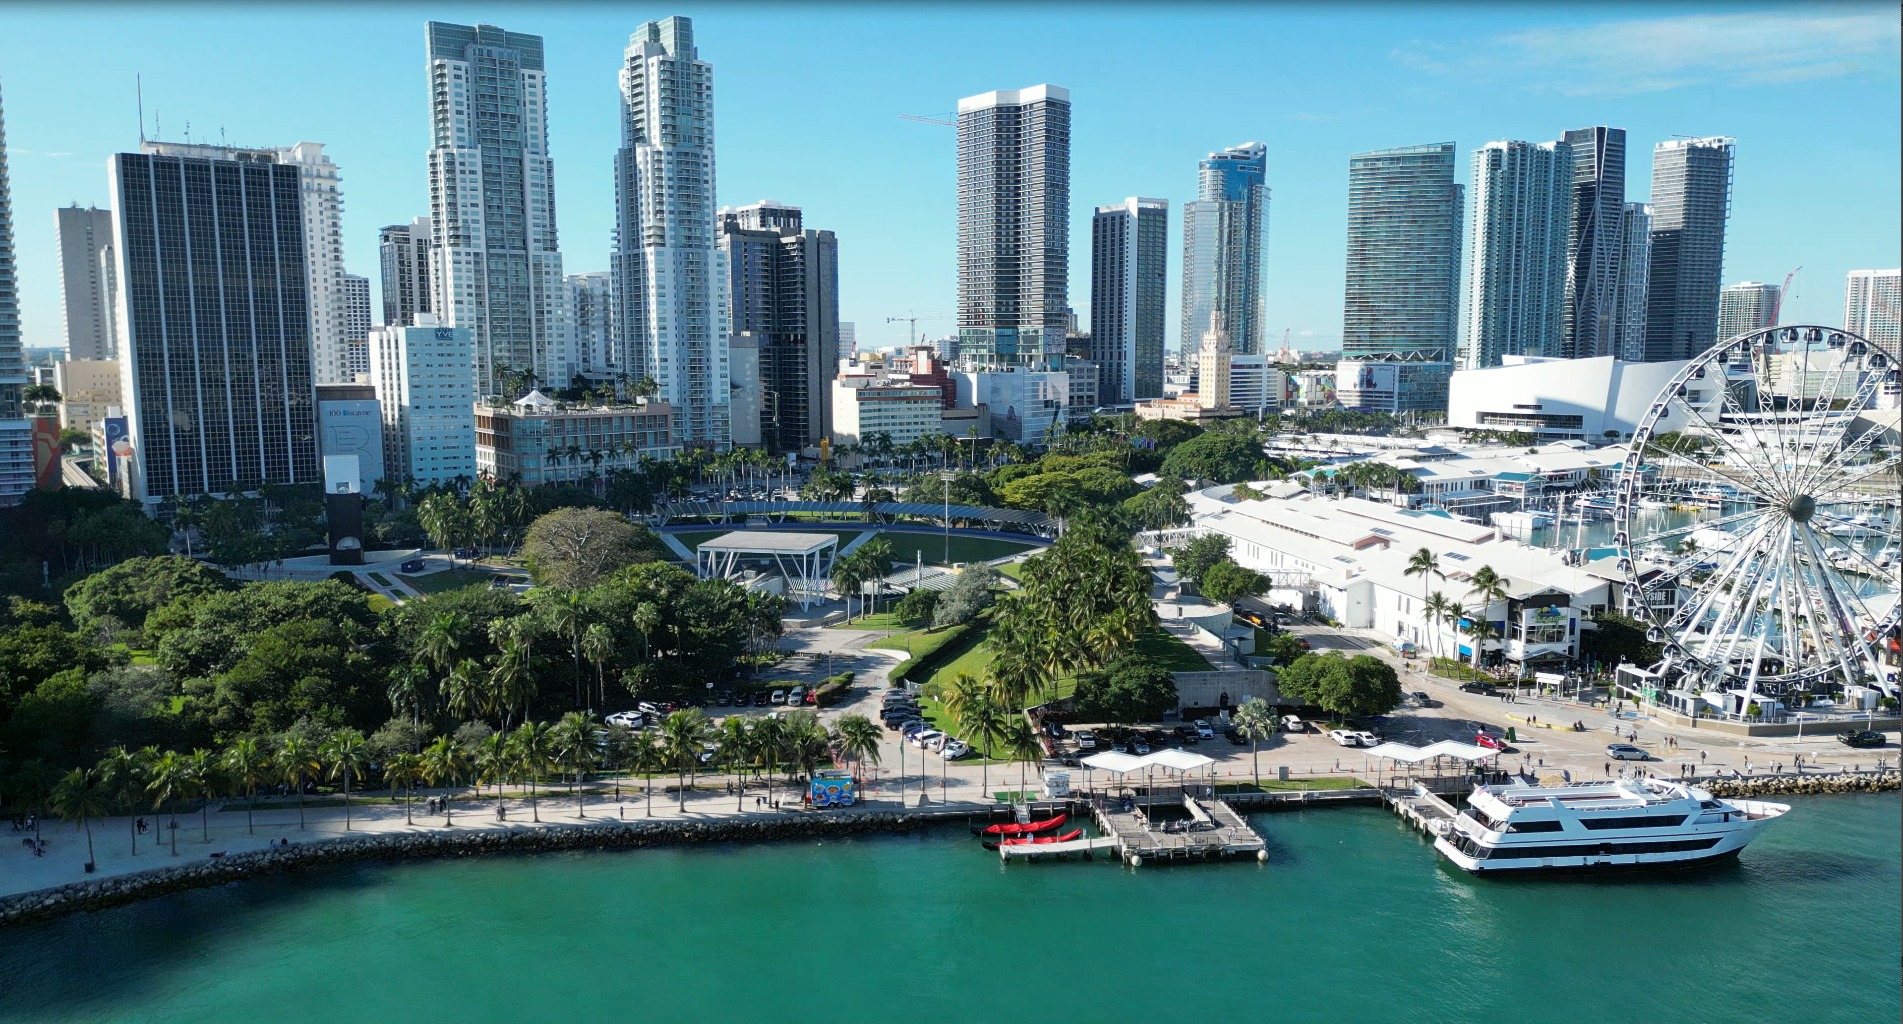 Miami Bayfront Park